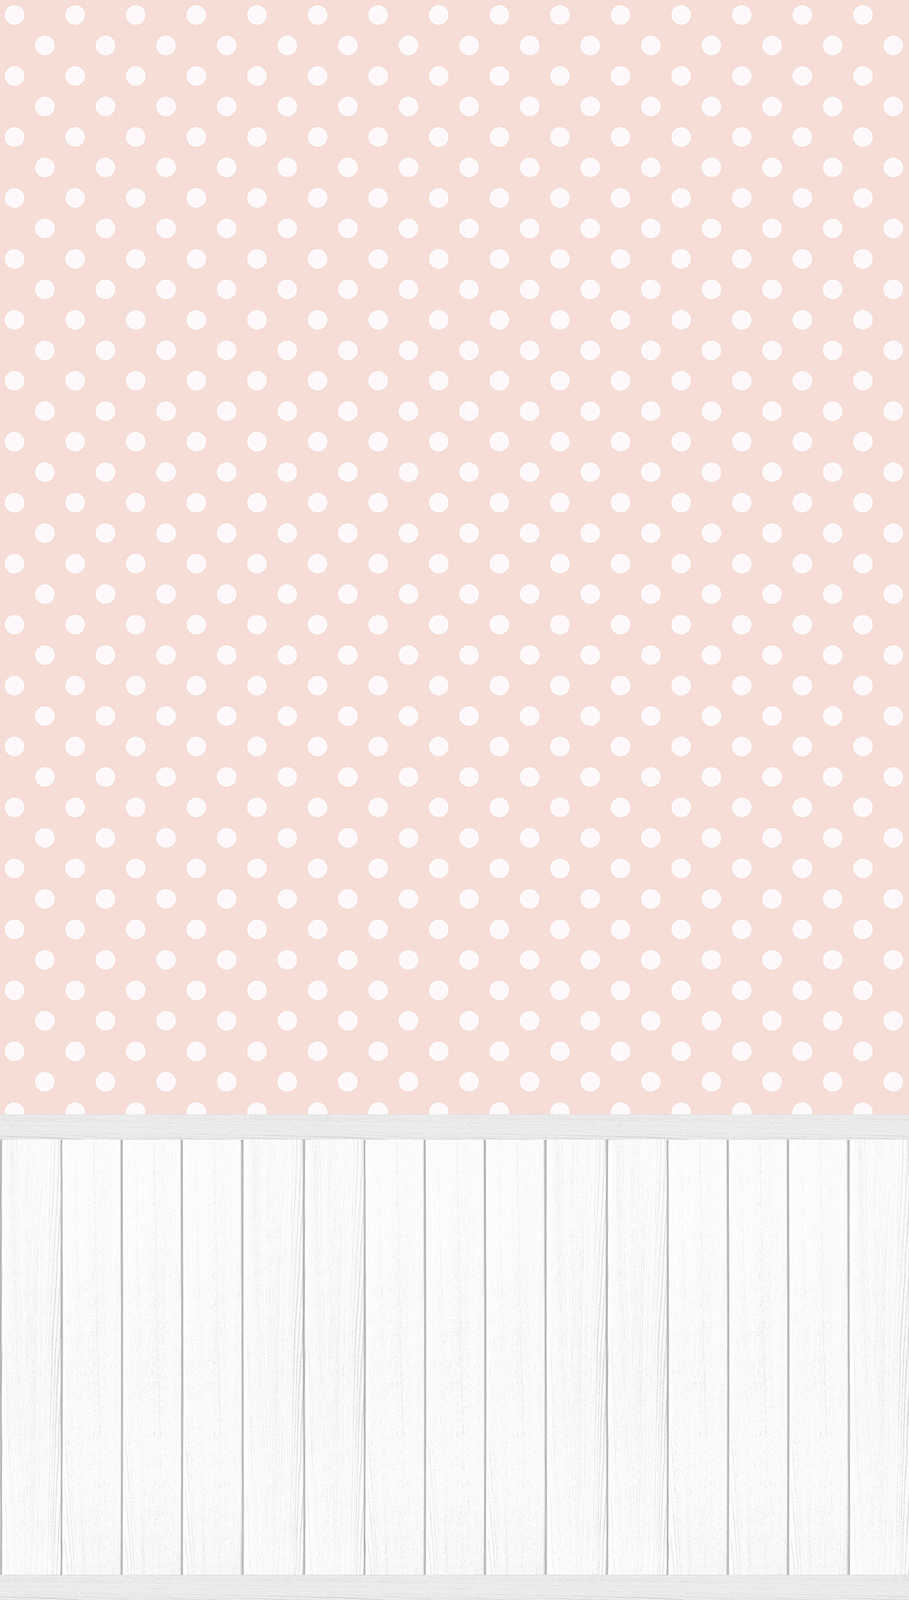             Carta da parati non tessuta con bordo a zoccolo effetto legno e motivo a punti - bianco, grigio, rosa
        